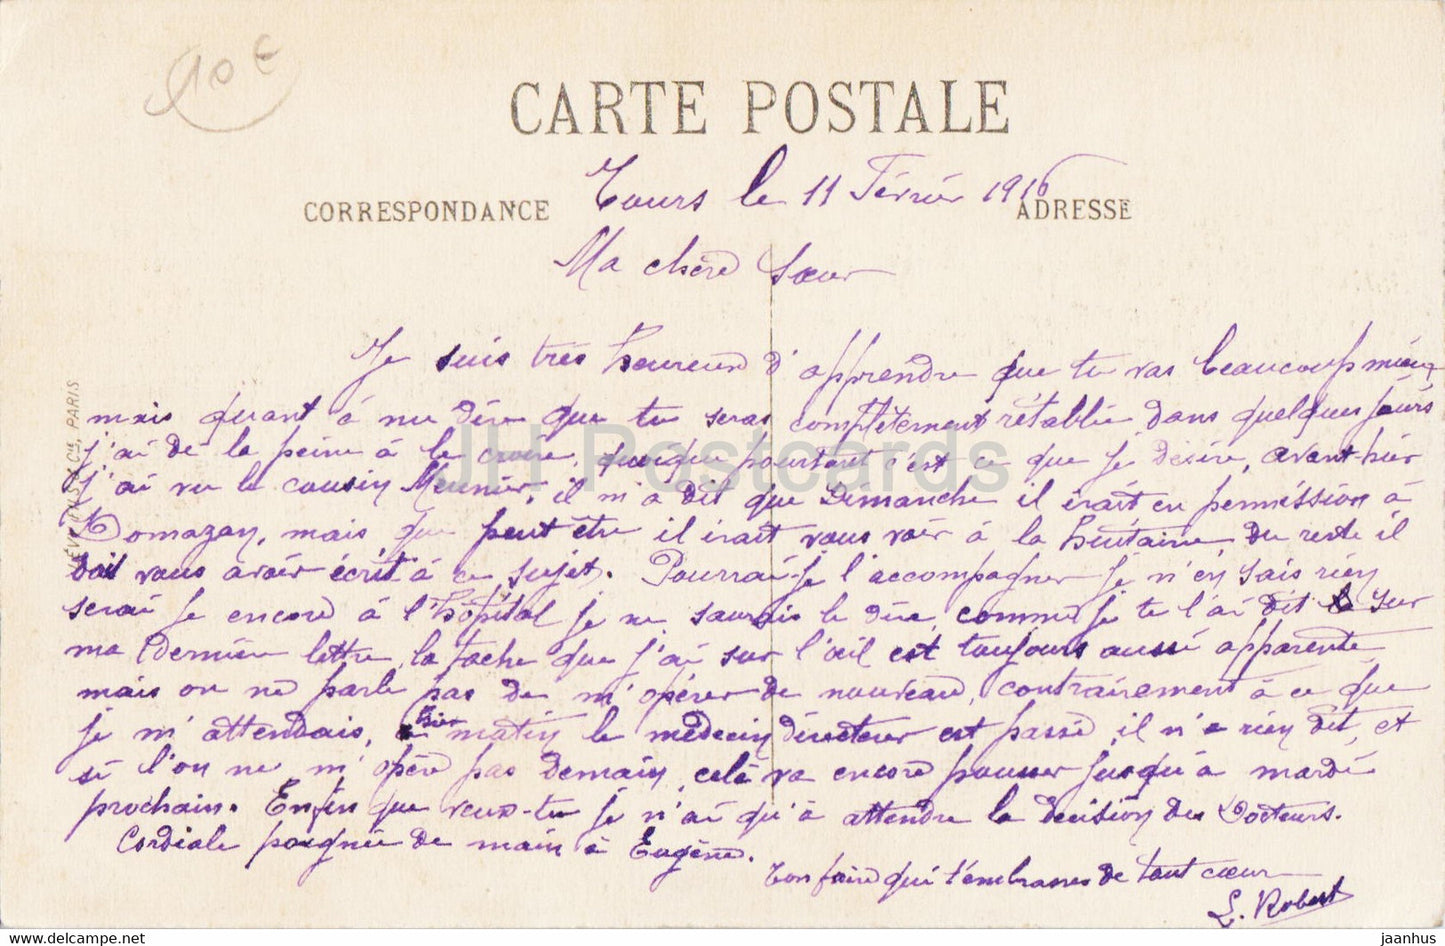 Tours - Le Palais de Justice et le Nouvel Hotel de Ville - 46 - old postcard - 1916 - France - used